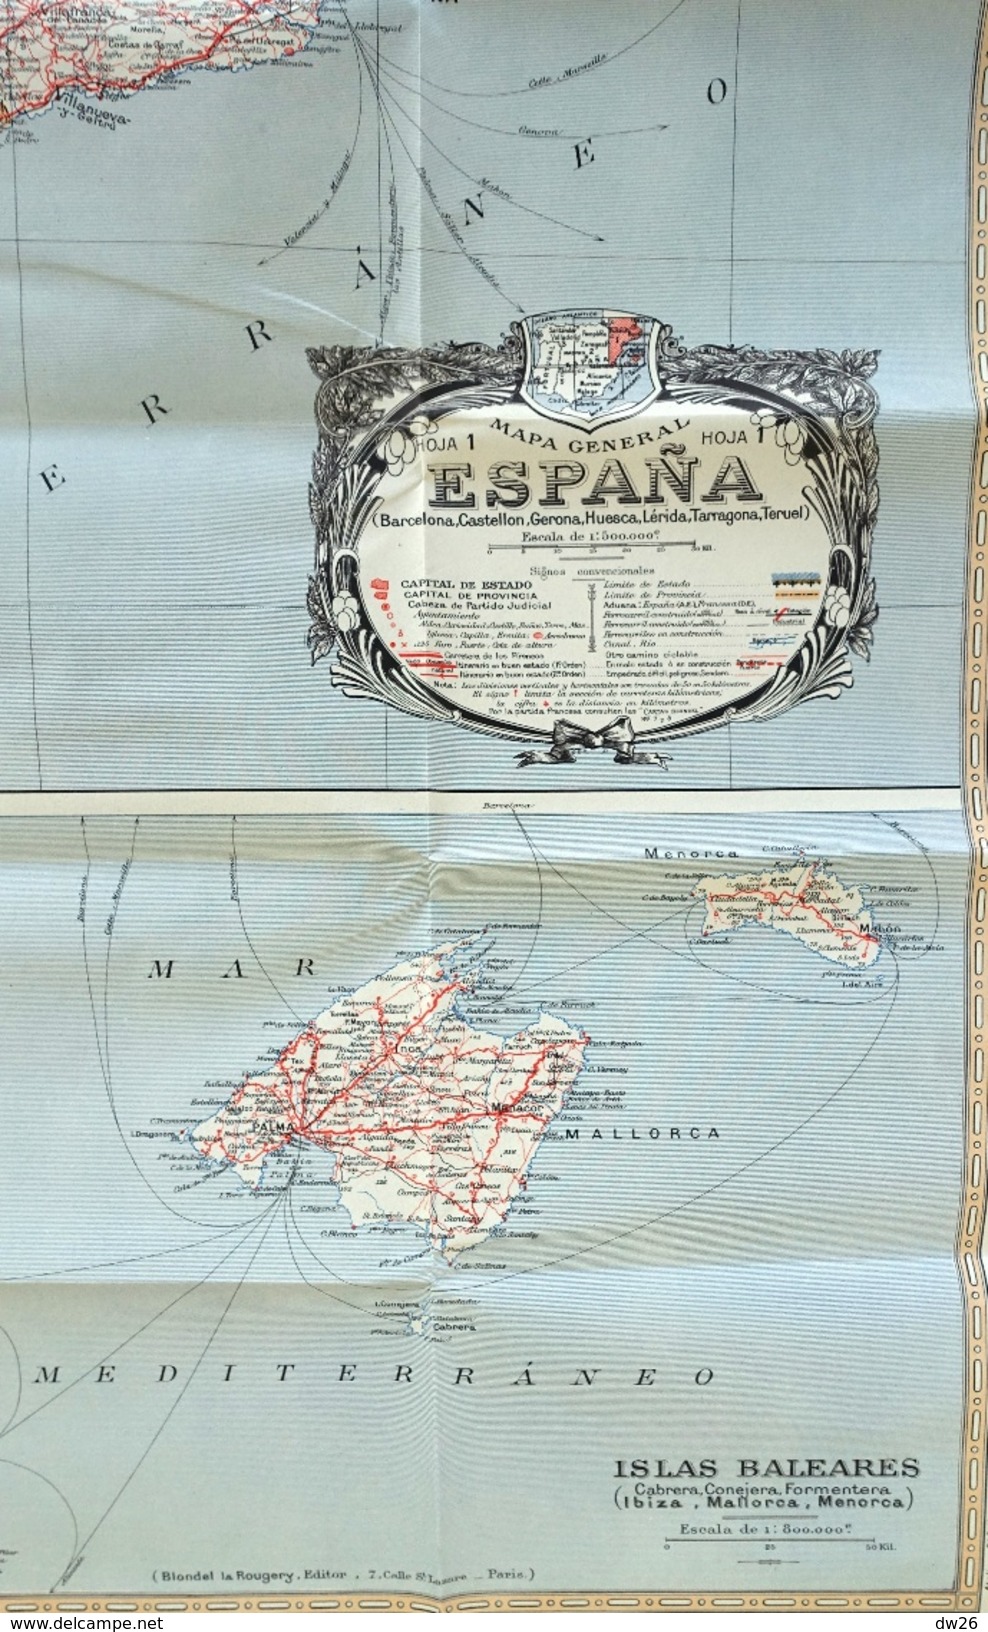 Mapa Turista Espana Y Portugal (Barcelona-Valencia-Islas Baléares) - Hoja 1 - Ed. Blondel 1938 (4 Colores) - Roadmaps